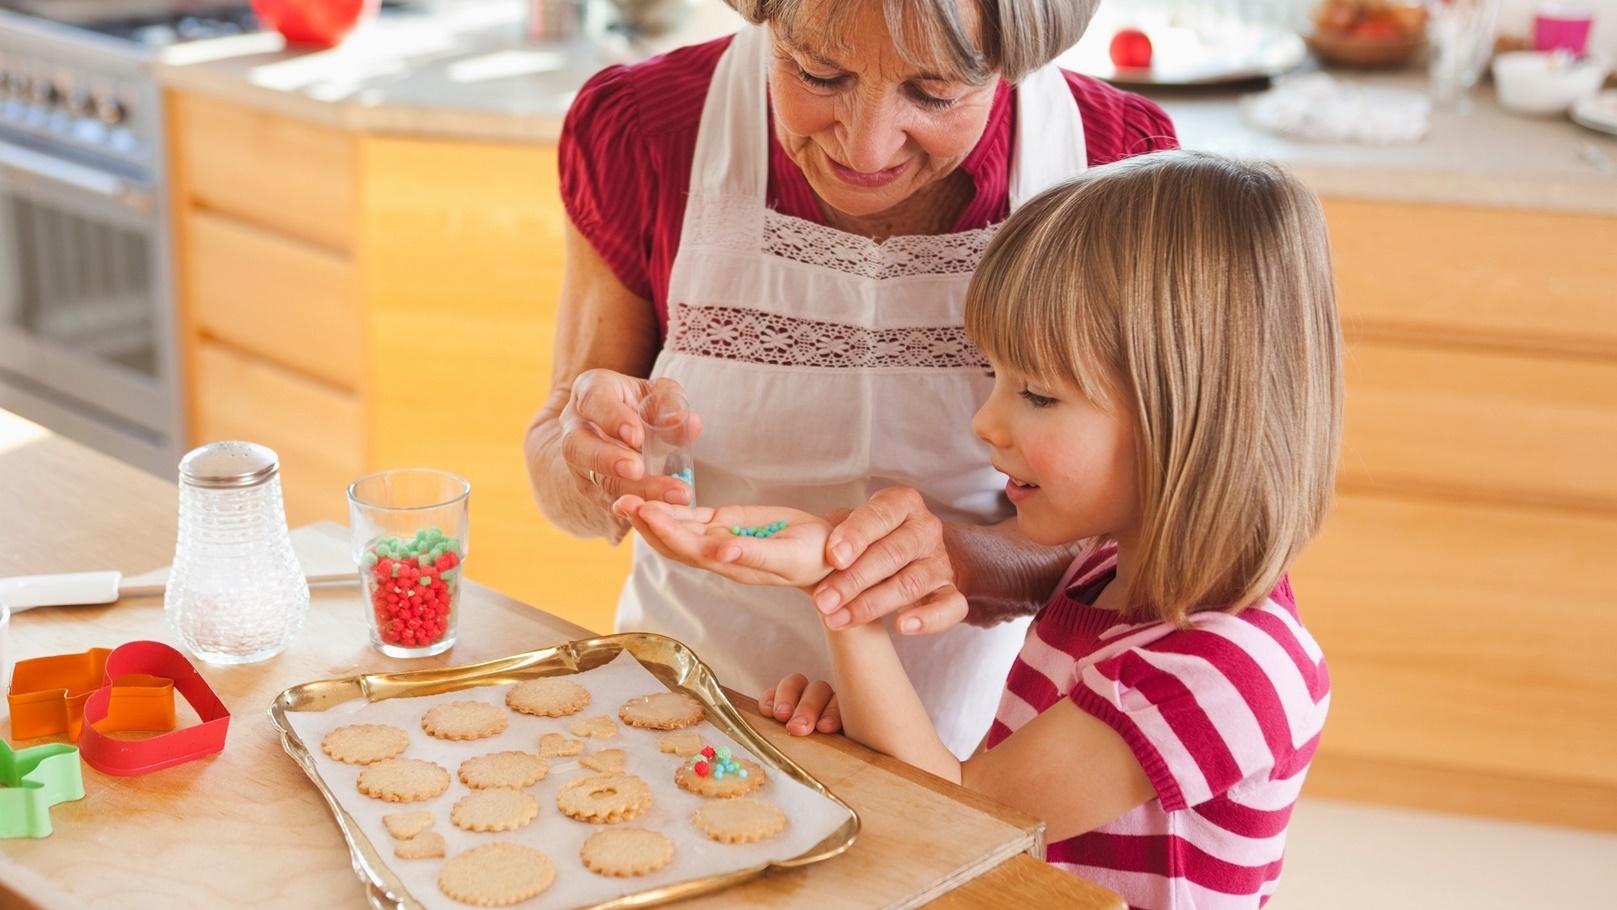 grandma-and-grandchild-baking-biscuits-2022-03-04-01-54-06-utc